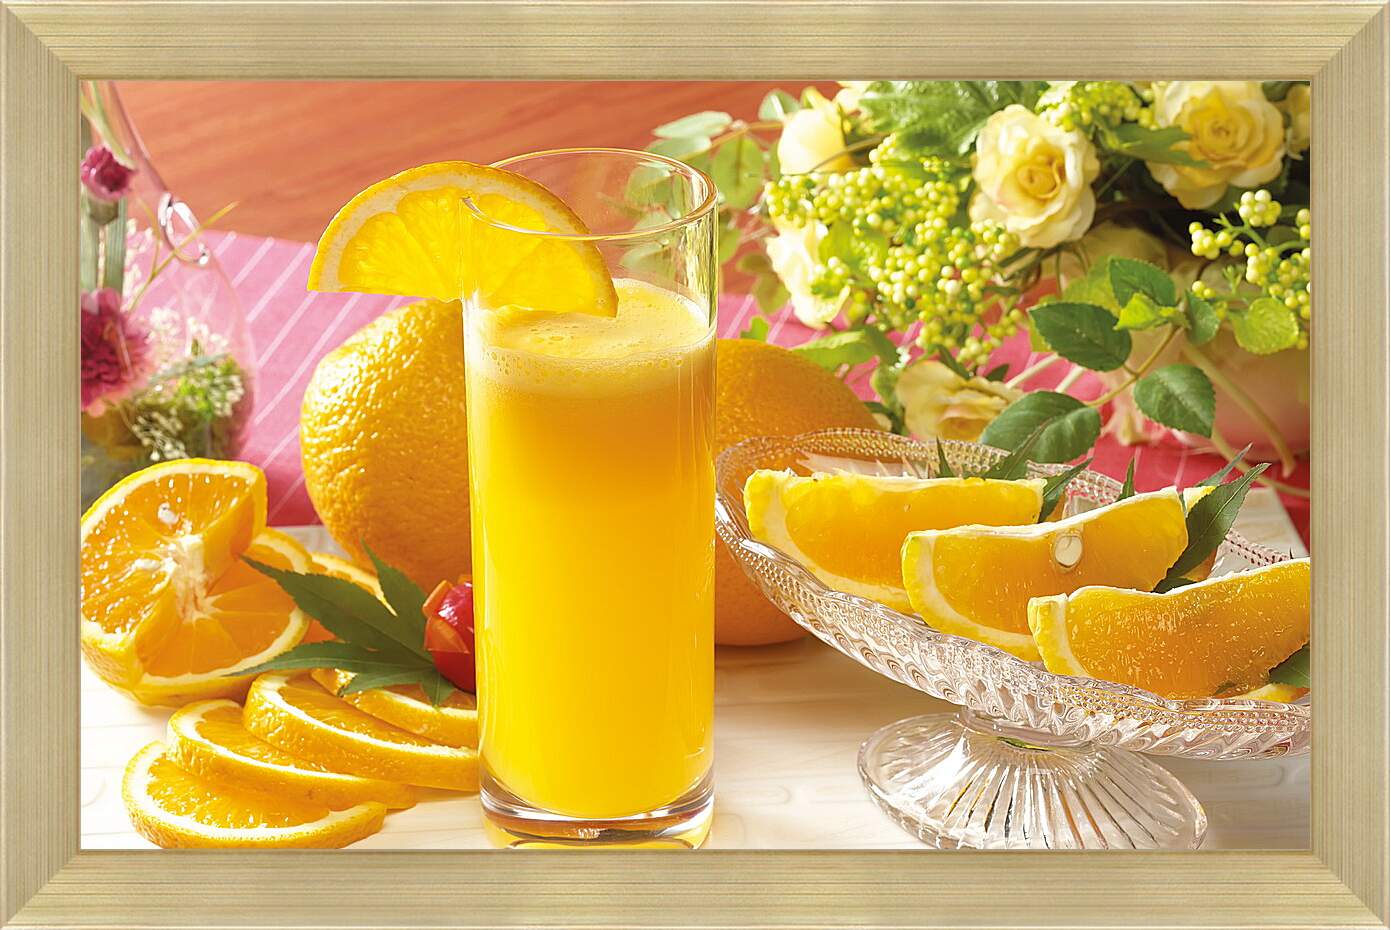 Картина в раме - Стакан апельсинового сока, целые апельсины и дольки